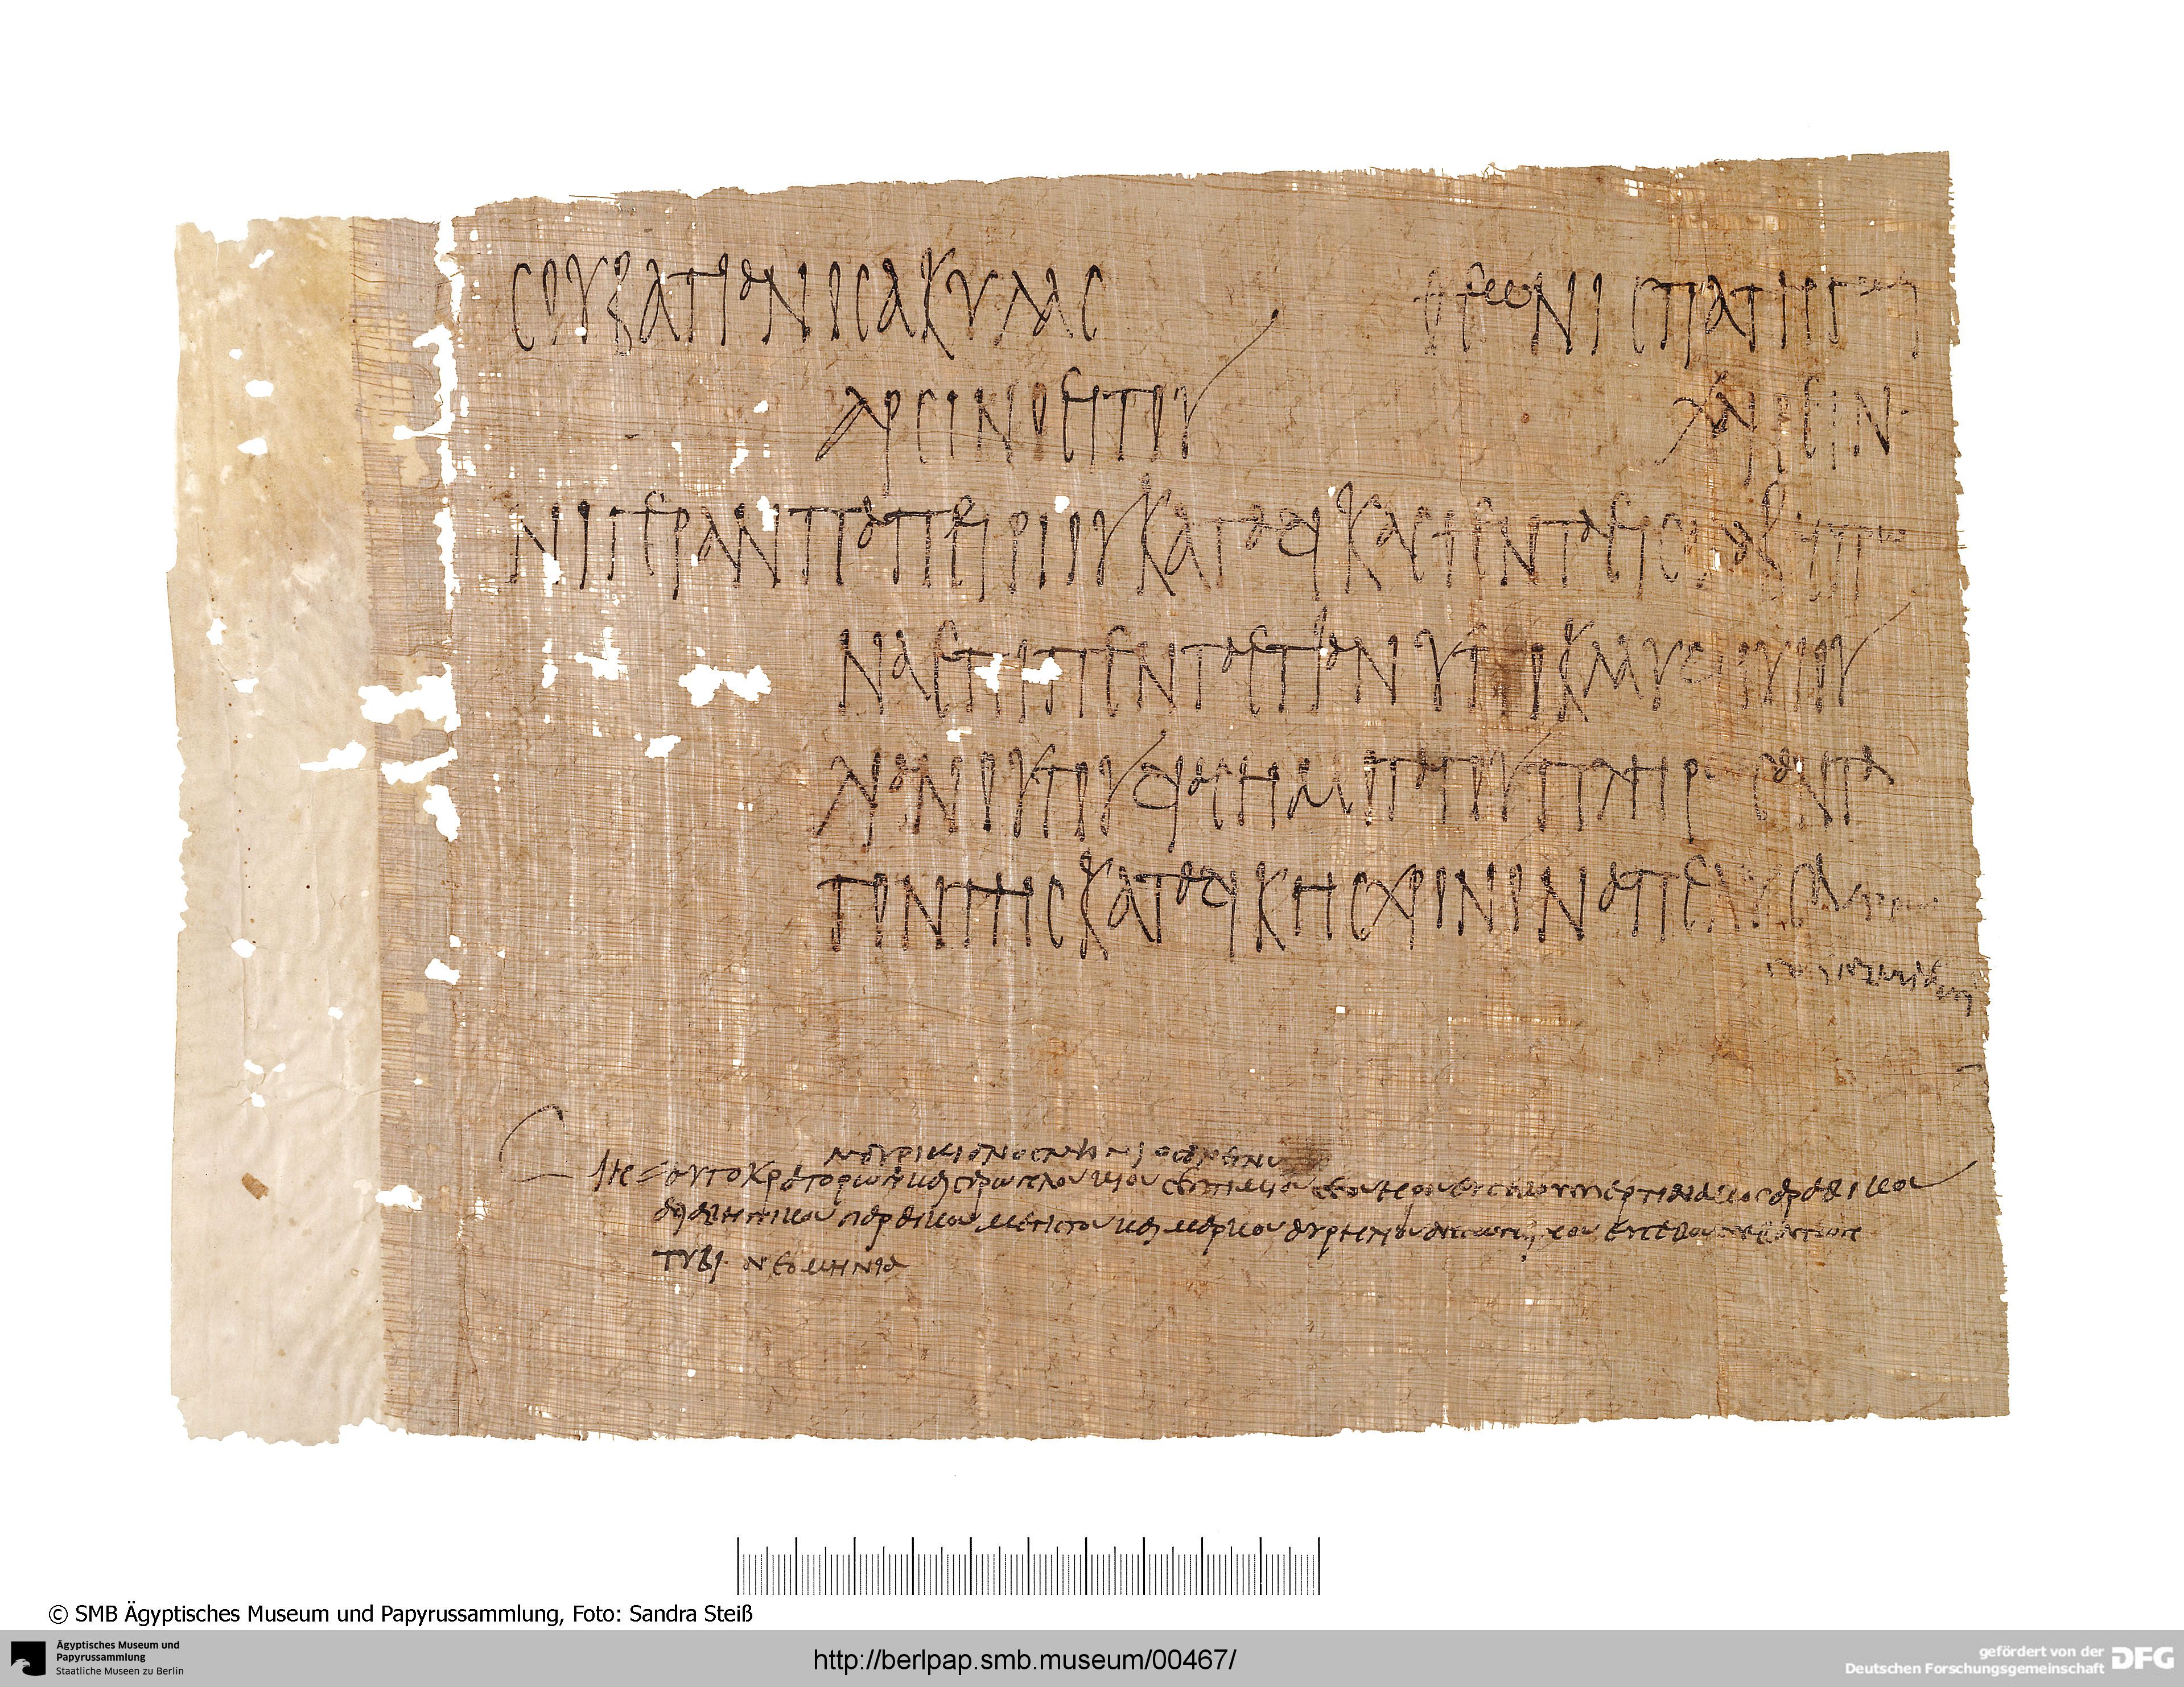 http://berlpap.smb.museum/Original/P_11532_S1_001.jpg (Ägyptisches Museum und Papyrussammlung, Staatliche Museen zu Berlin CC BY-NC-SA)